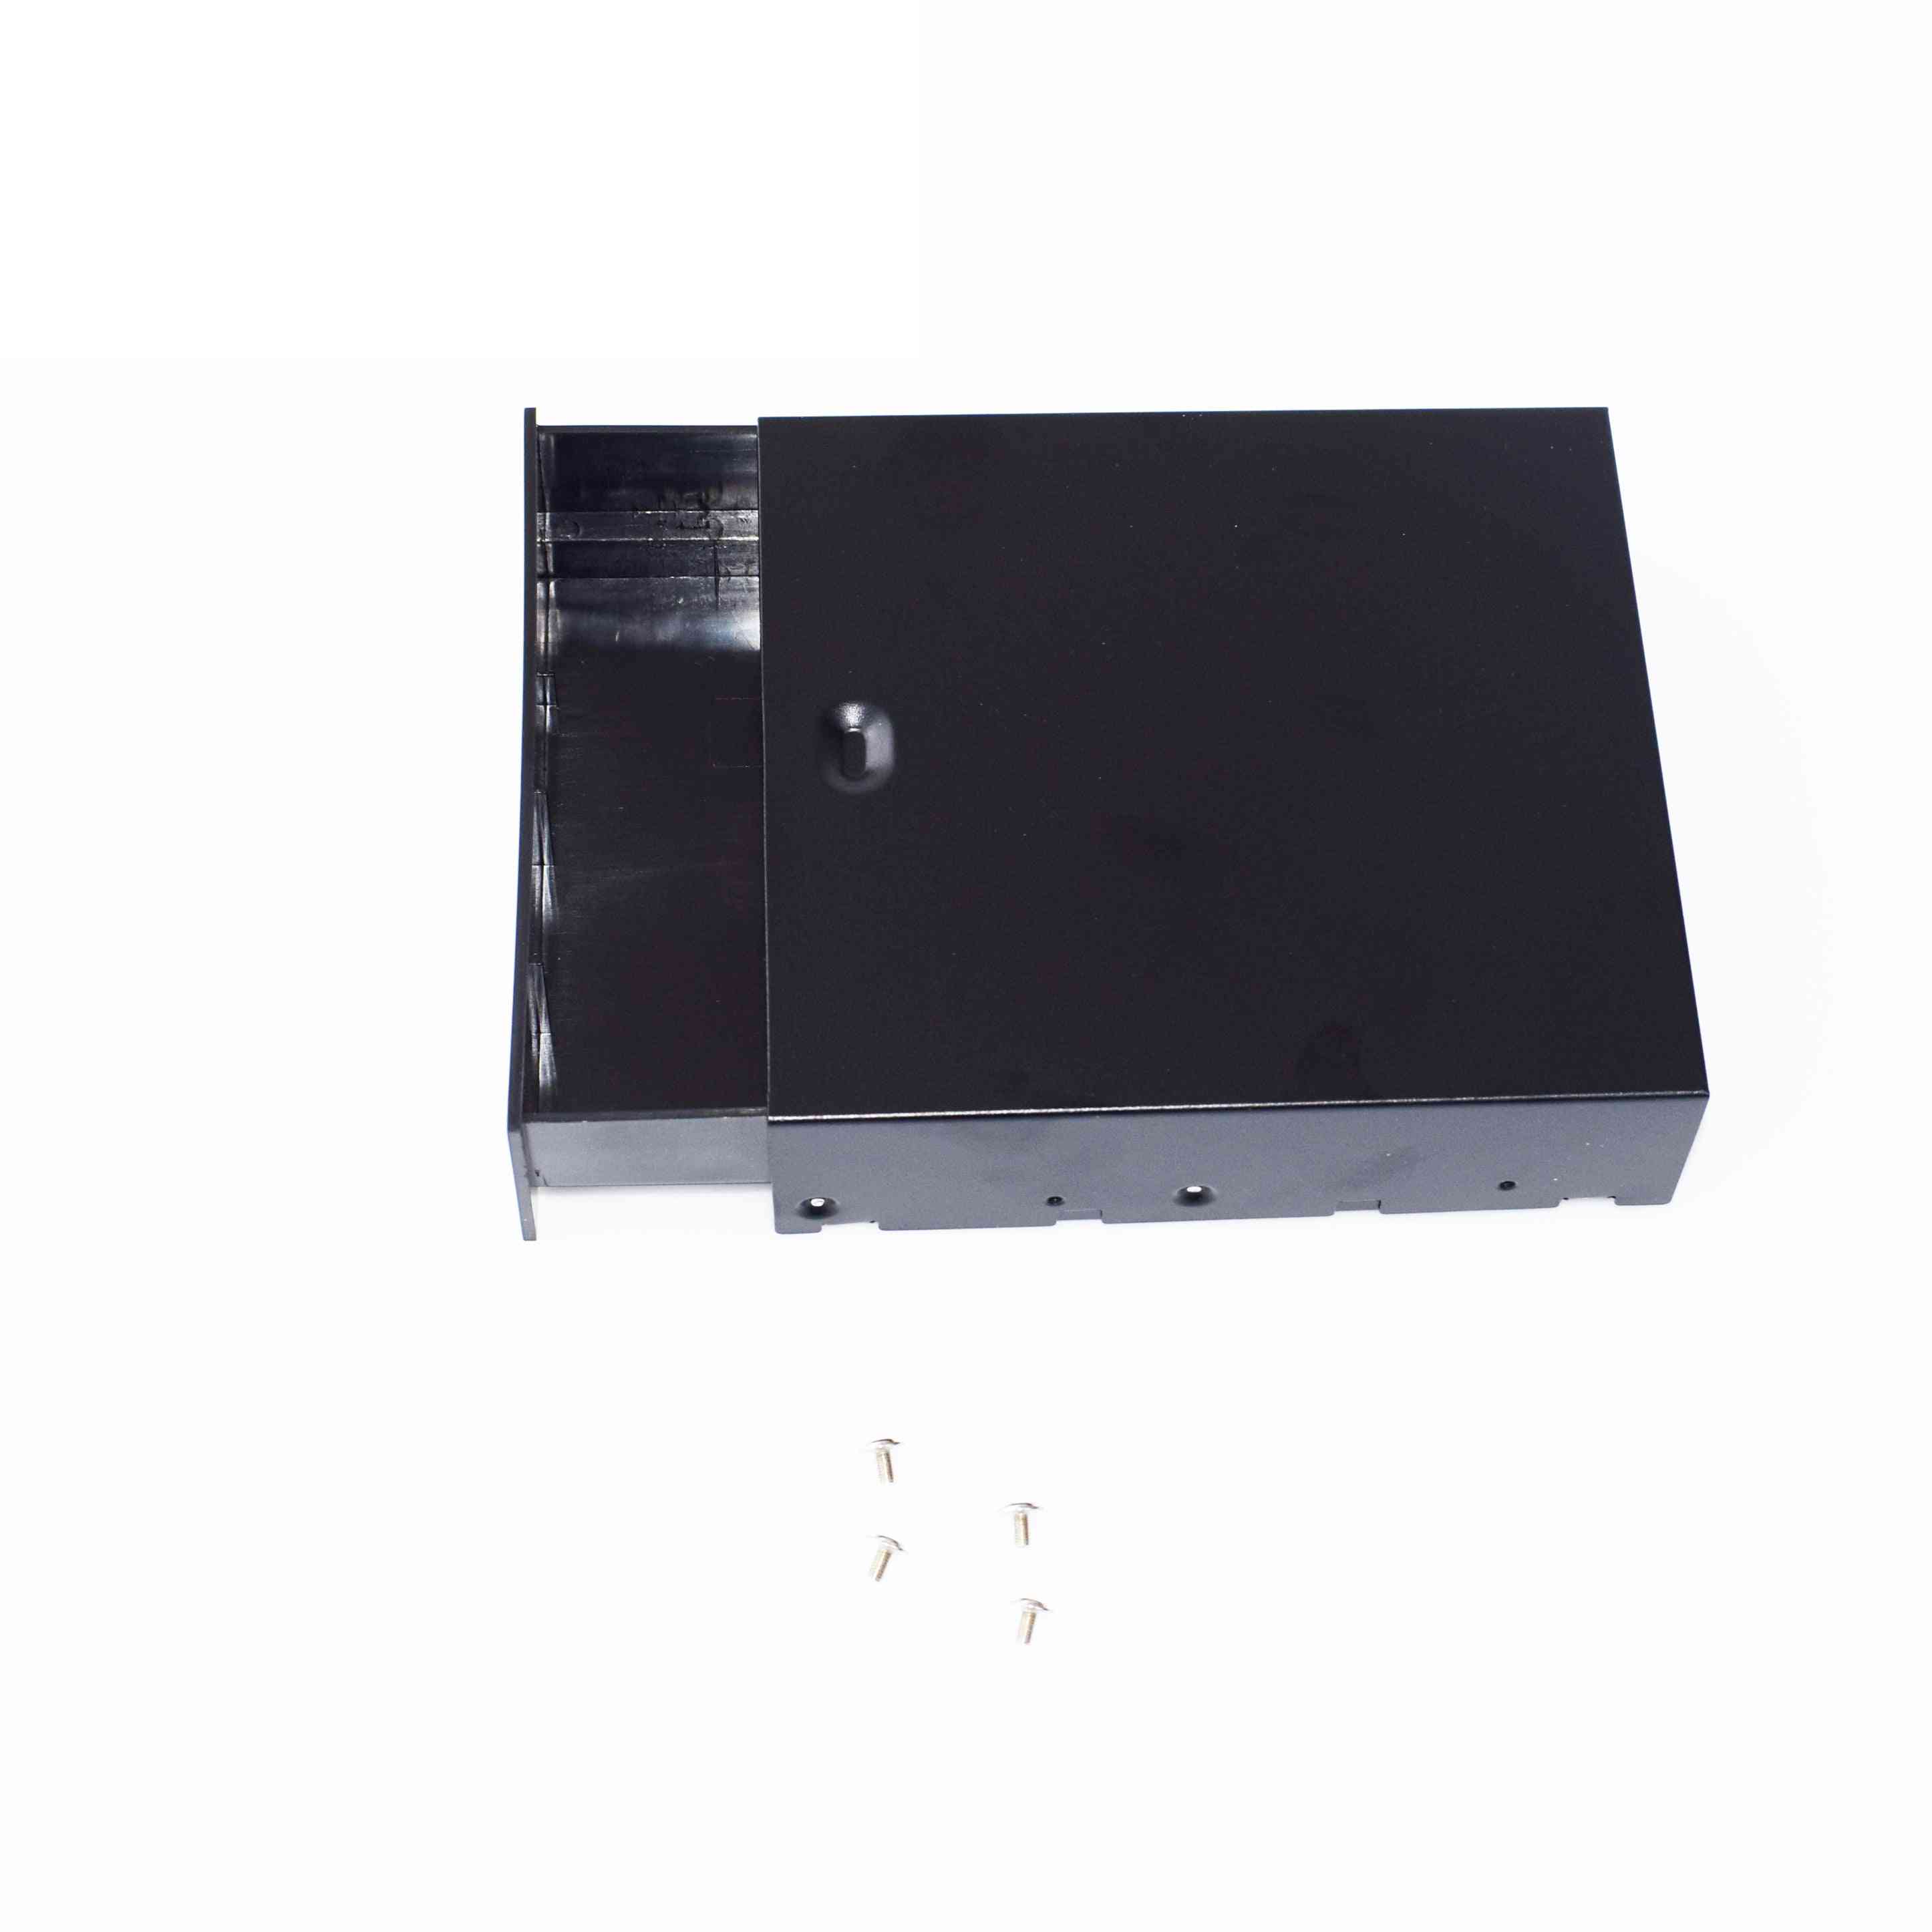 Negro computadora de escritorio-atx / matx disco duro móvil-en blanco-rack cajón bandeja caja de almacenamiento / caja (5.25 